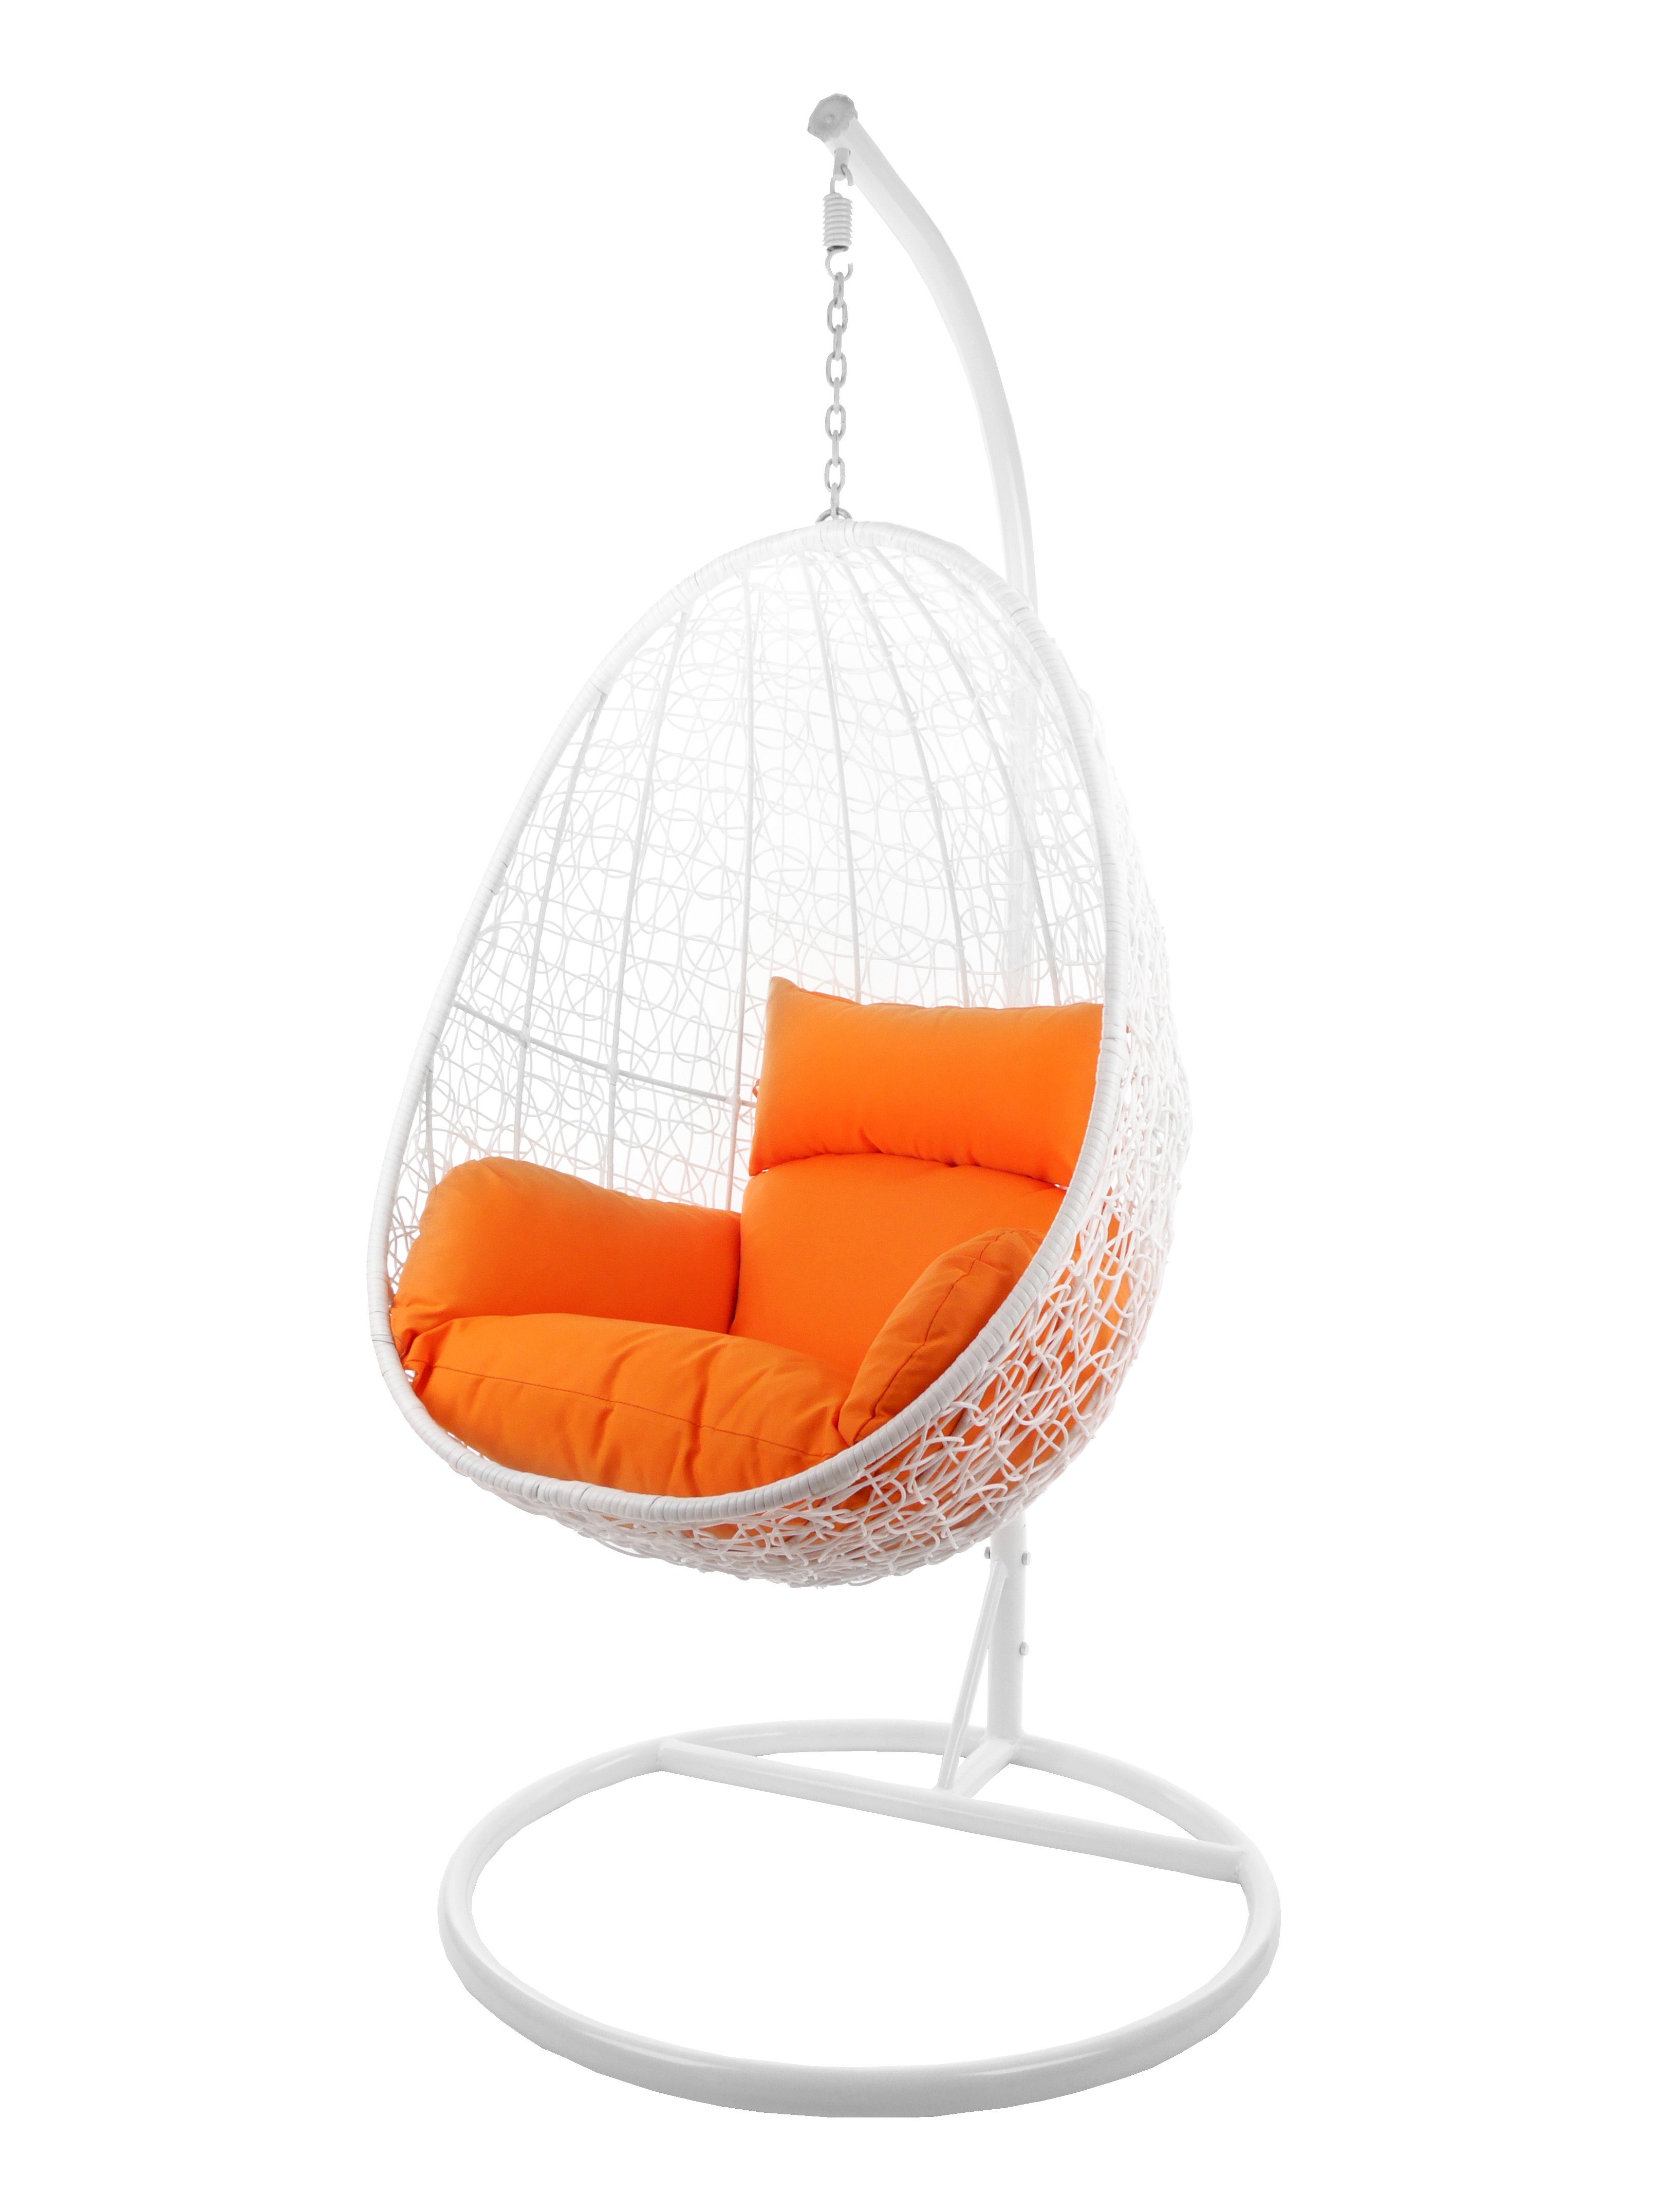 KIDEO Hängesessel Hängesessel CAPDEPERA Kissen, weiß weiß, Loungesessel, Chair mit Gestell orange Hängesessel (3030 und Swing tangerine)